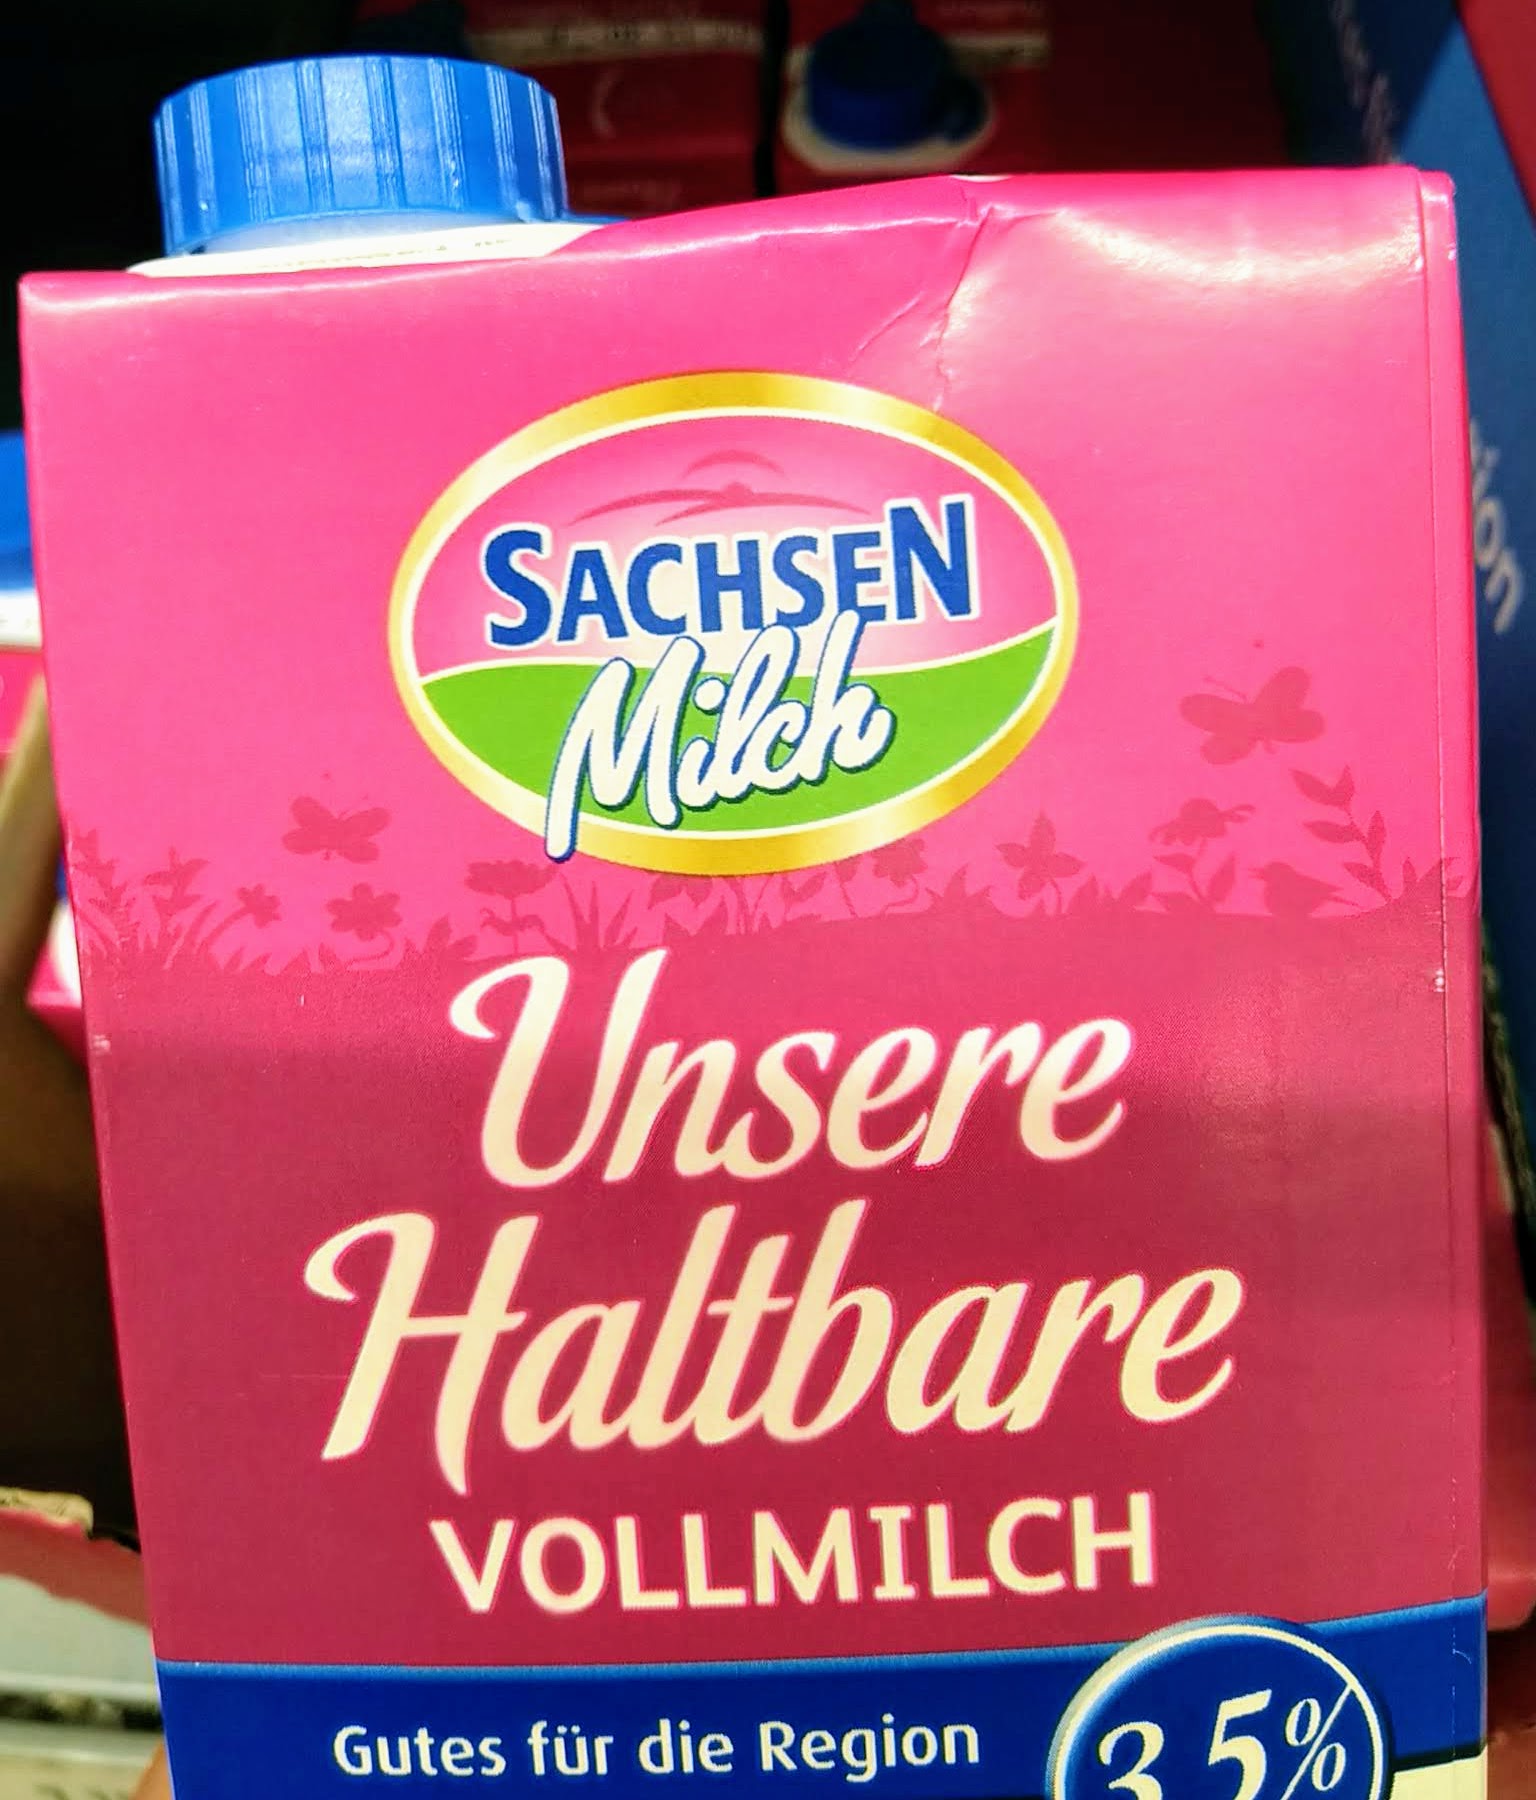 Sachsenmilch: Ballonfahrt gewinnen - Kassenbon hochladen